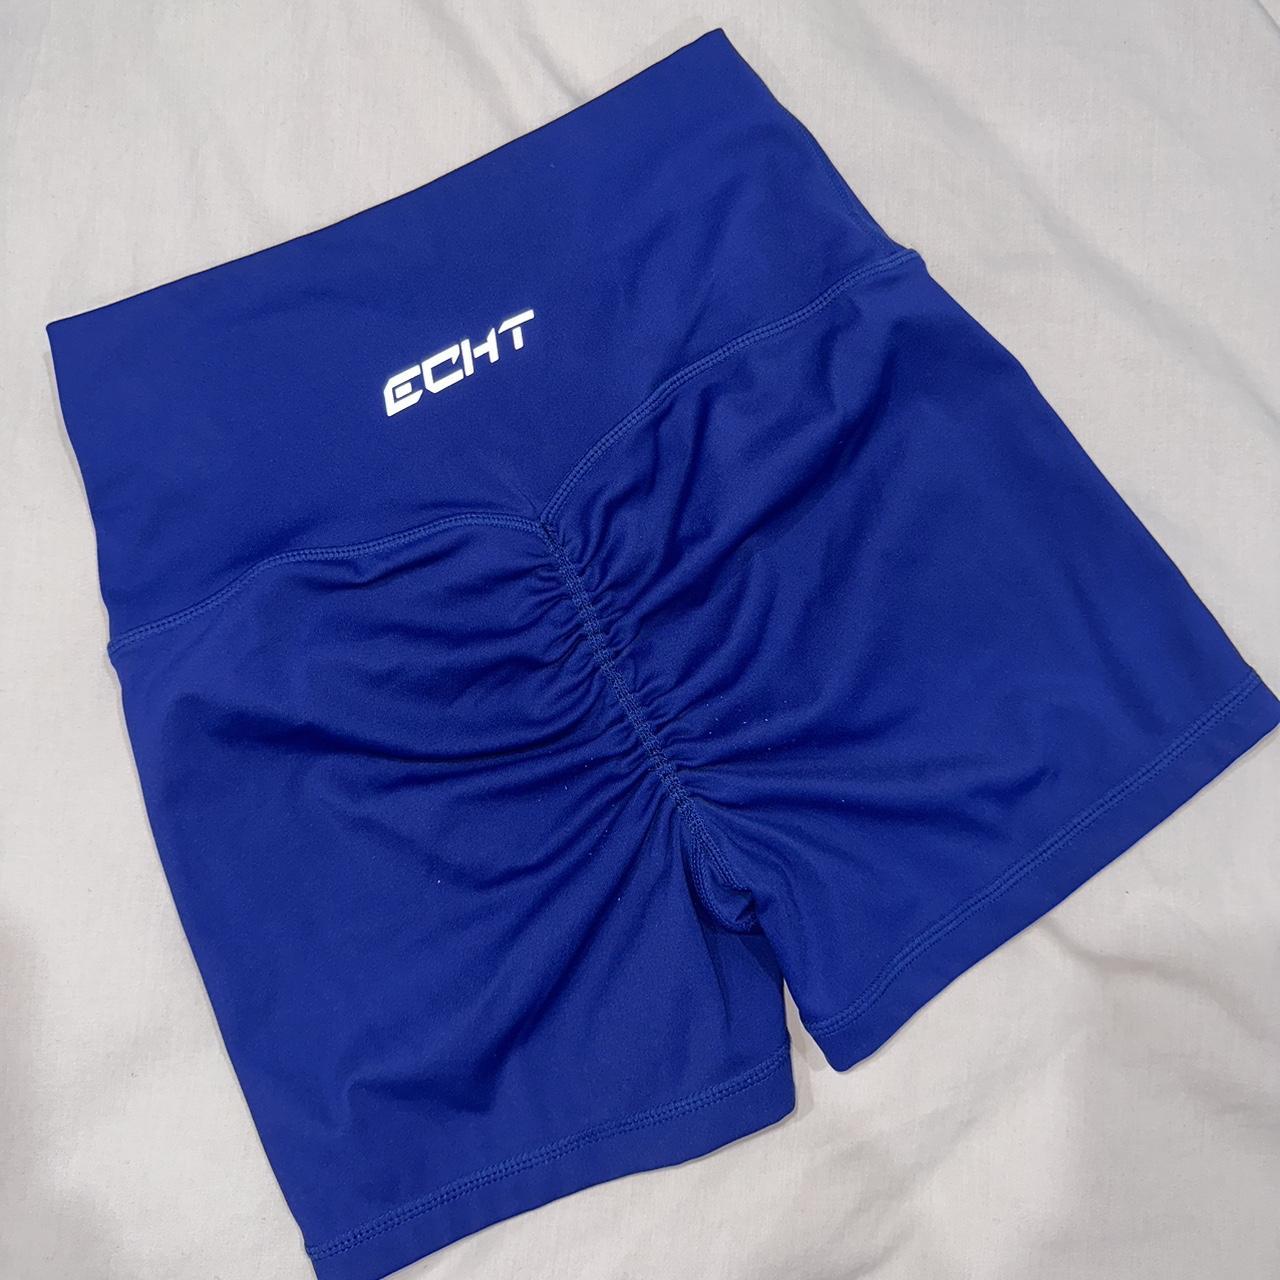 Echt Force Scrunch Shorts - Blue